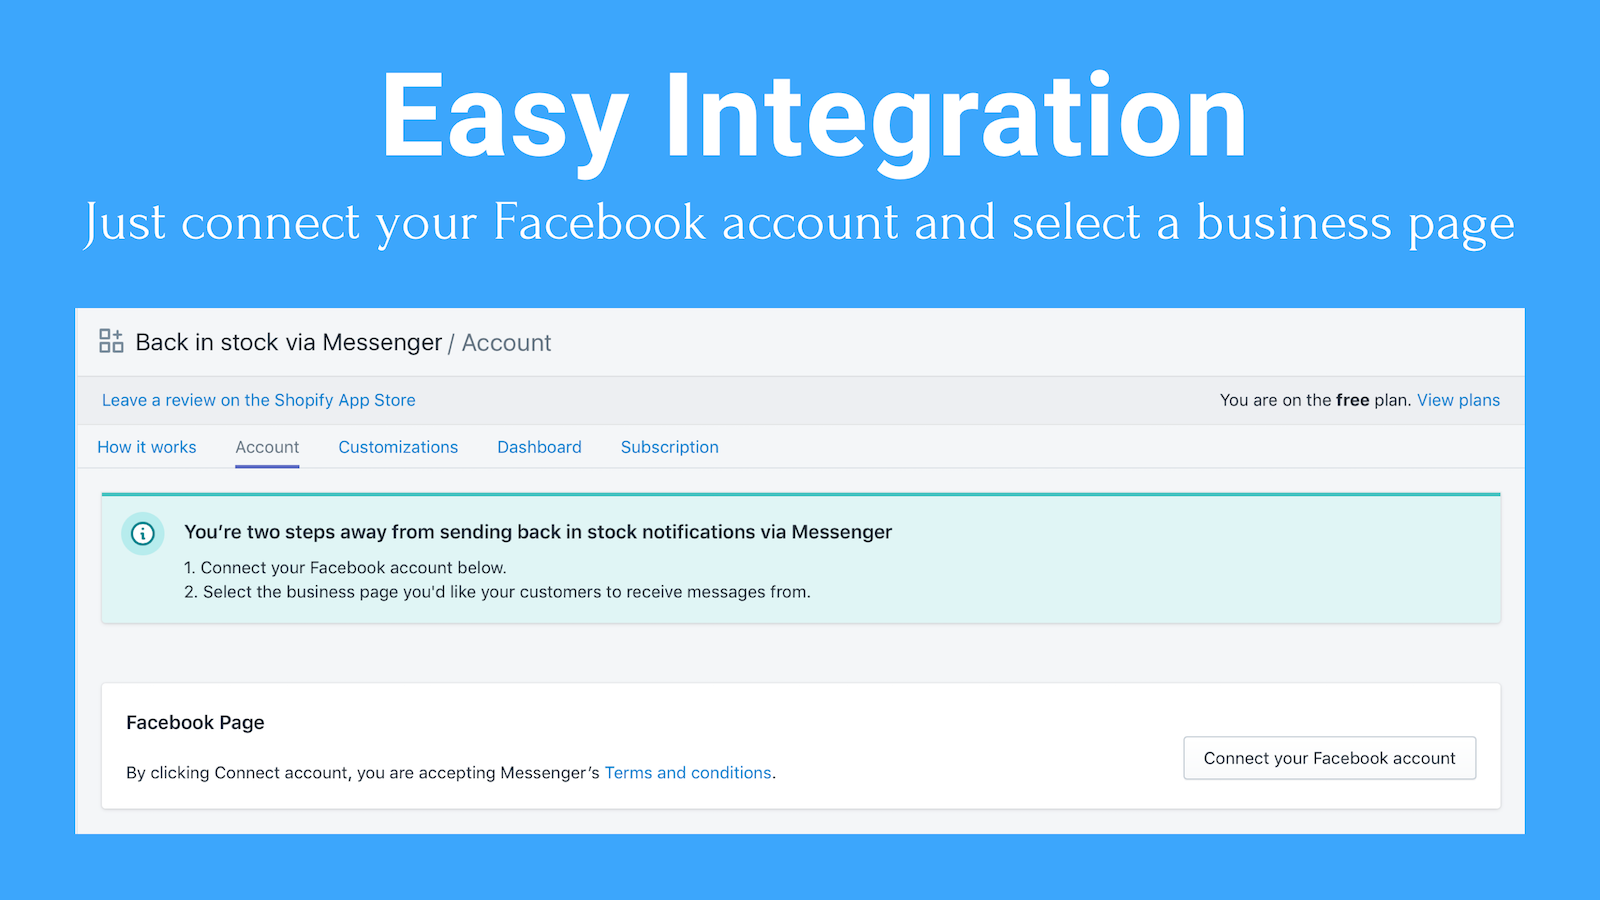 Enkel integration: Anslut bara ditt Facebook-konto och välj